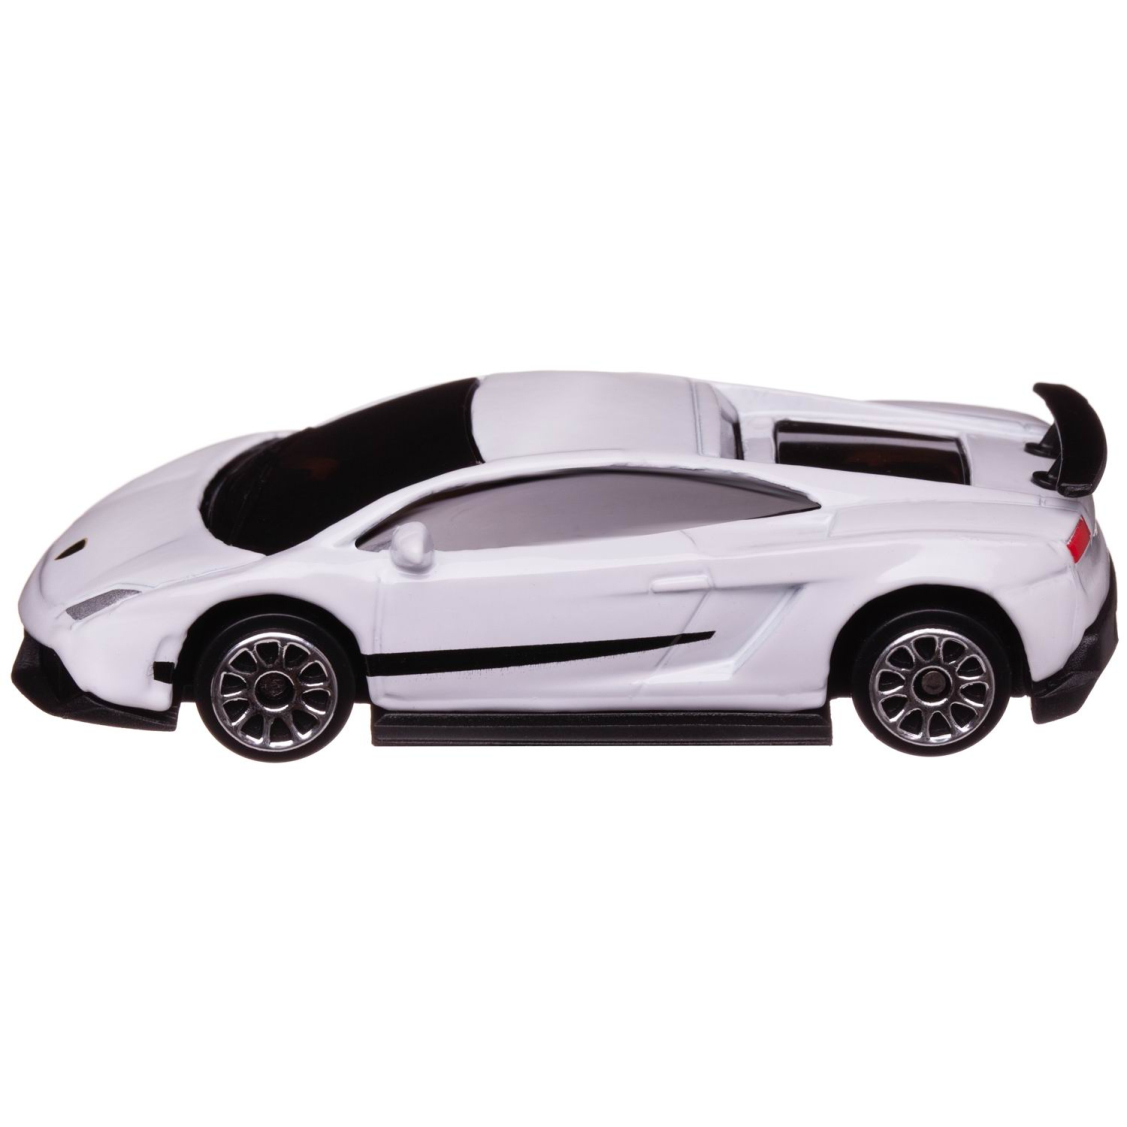 Машинка металлическая Uni-Fortune RMZ City 1:64 Lamborghini Gallardo LP570-4 без механизмов, (белый)